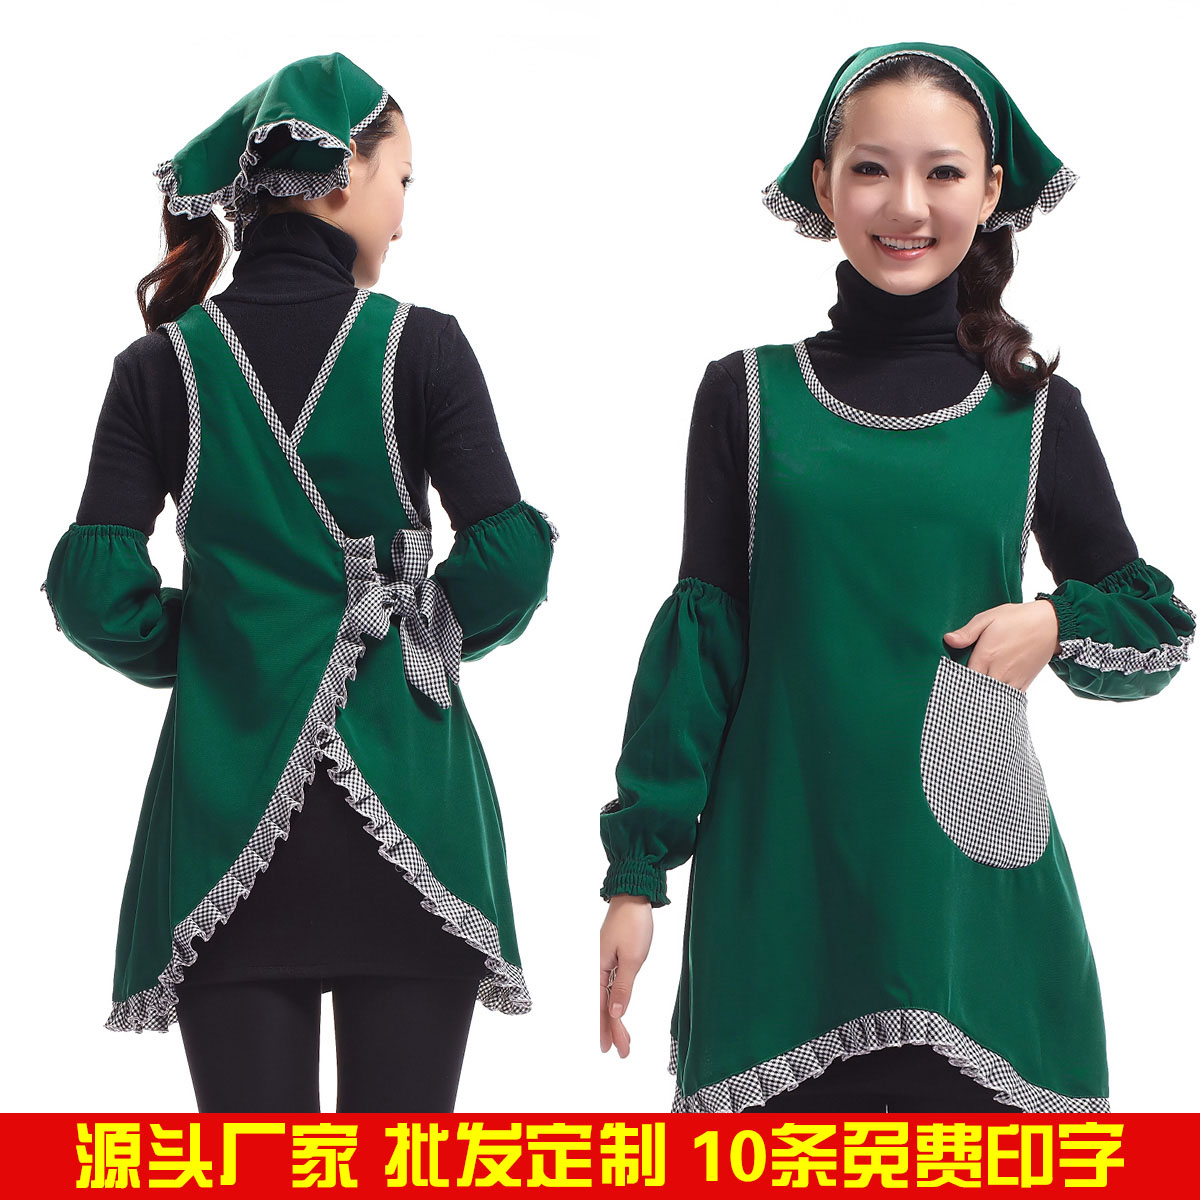 韩版时尚工作服定做围裙印LOGO餐厅服务员饭店咖啡厅奶茶店墨绿色